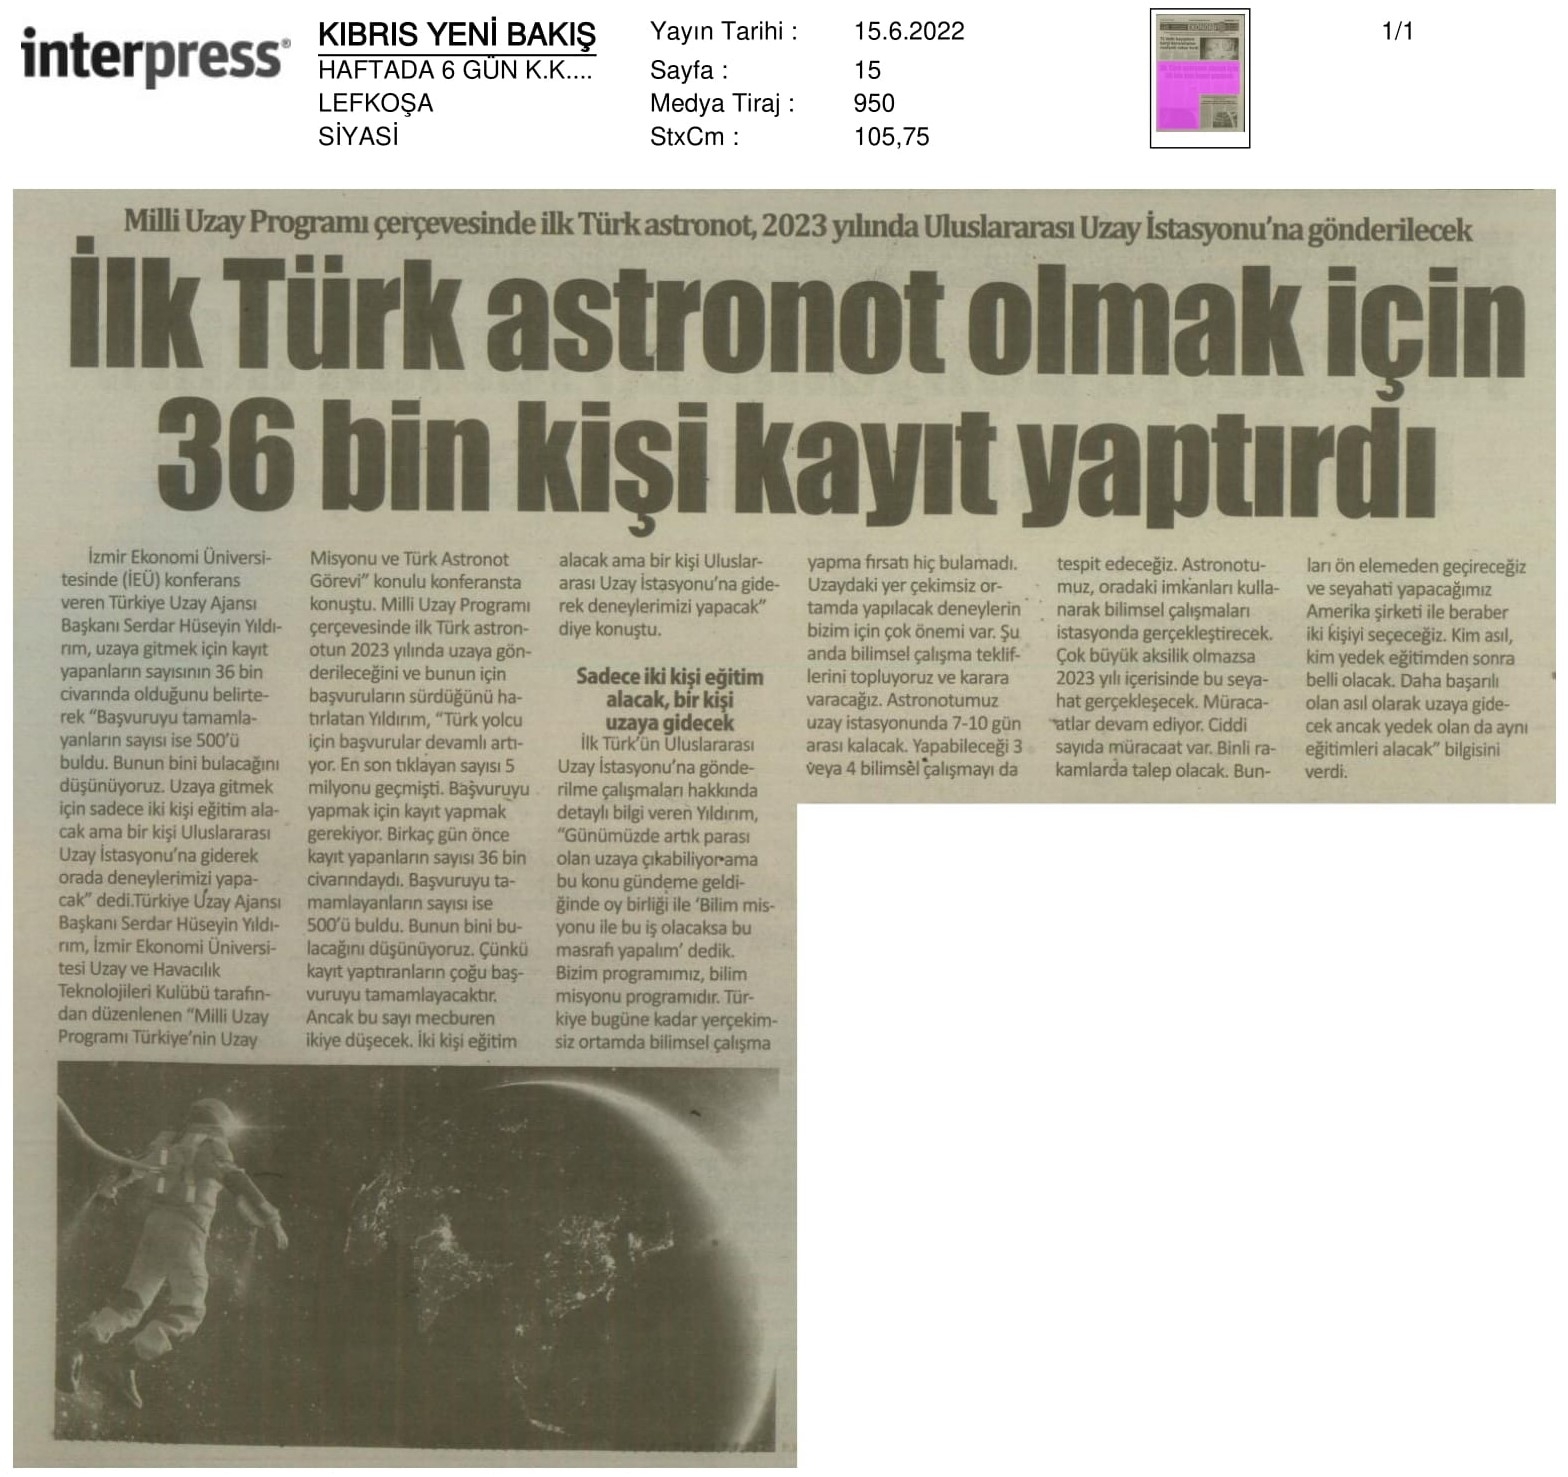 İzmir Ekonomi'de 'Türkiye'nin uzay hedefleri' konuşuldu